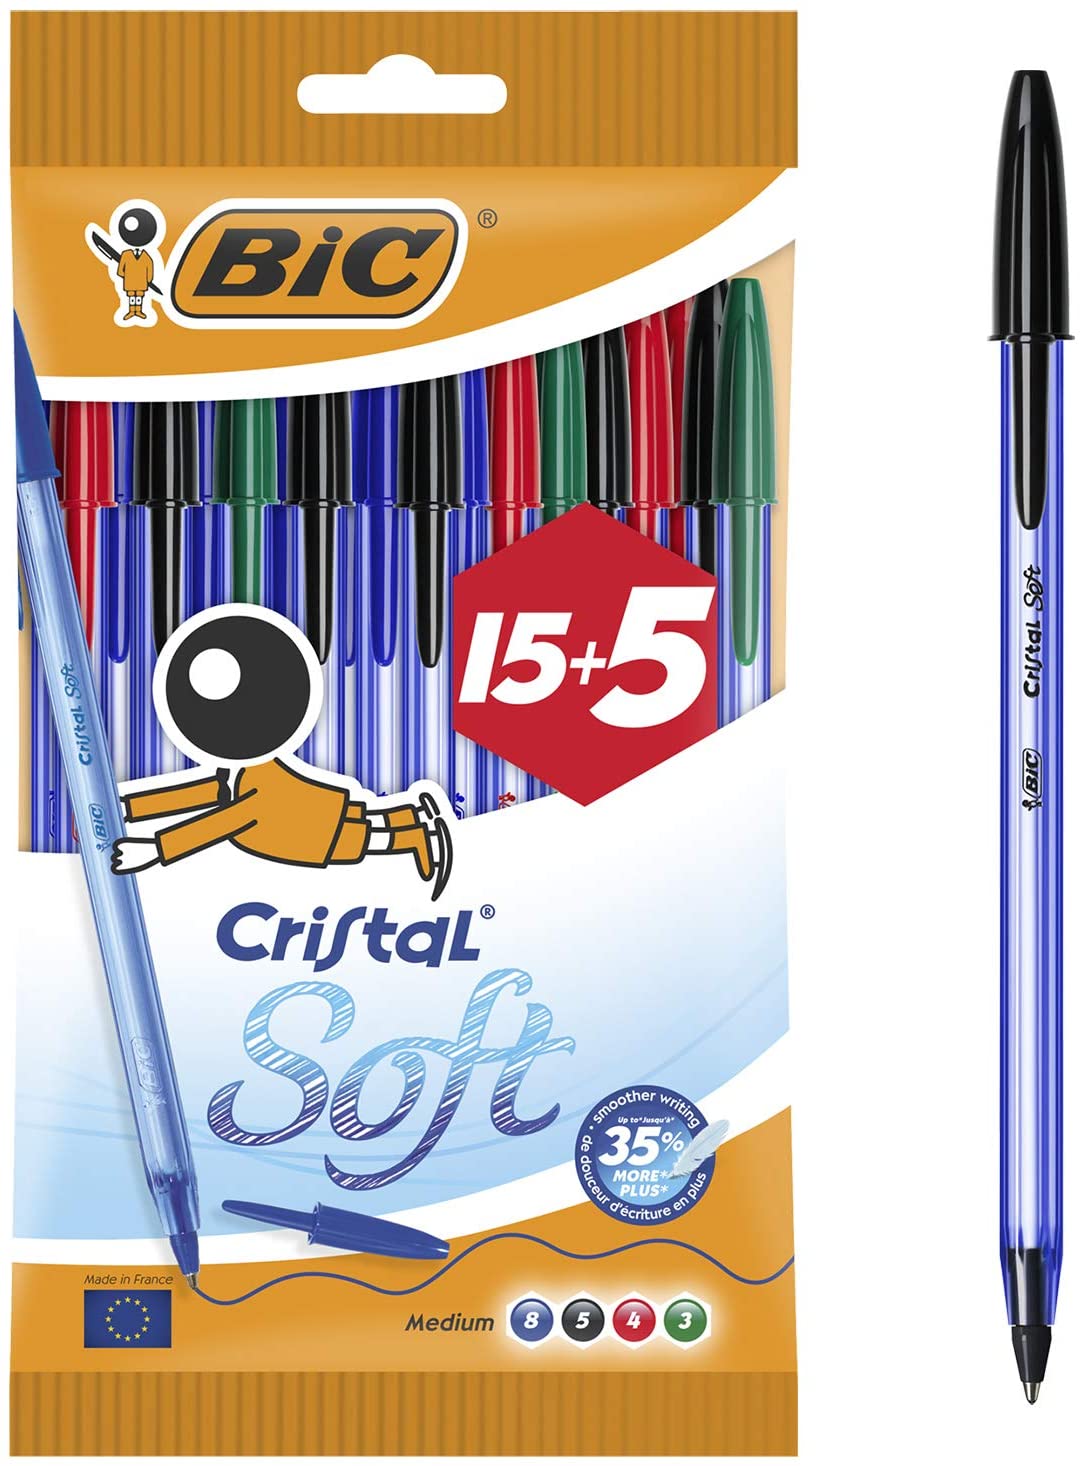 Bic Cristal Soft punta media 1,2 mm confezione 20 penne colorI assortiti